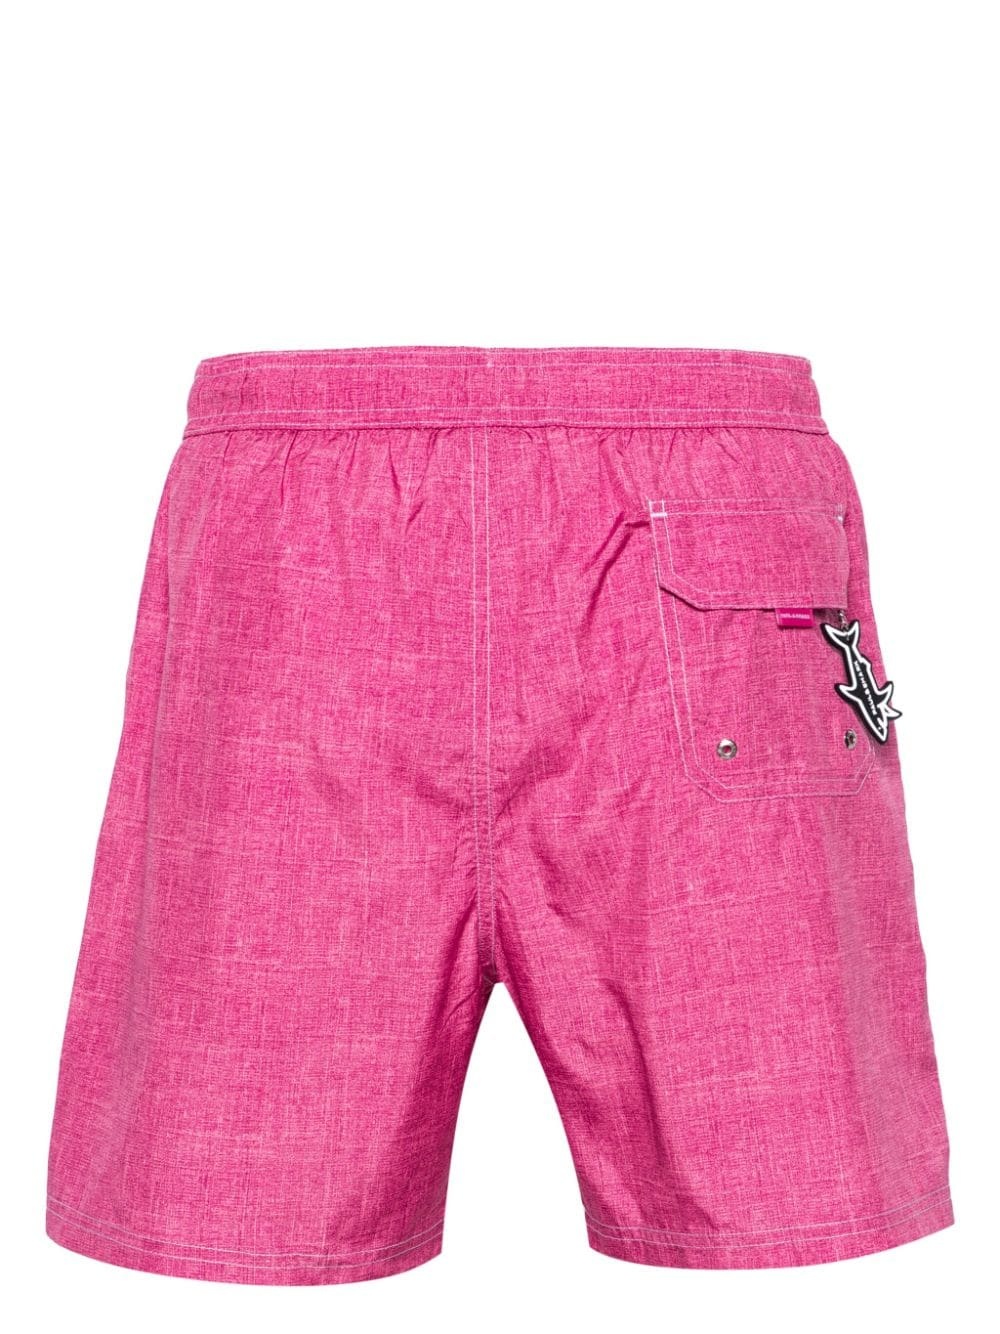 shark-charm textil-print swim shorts - 2